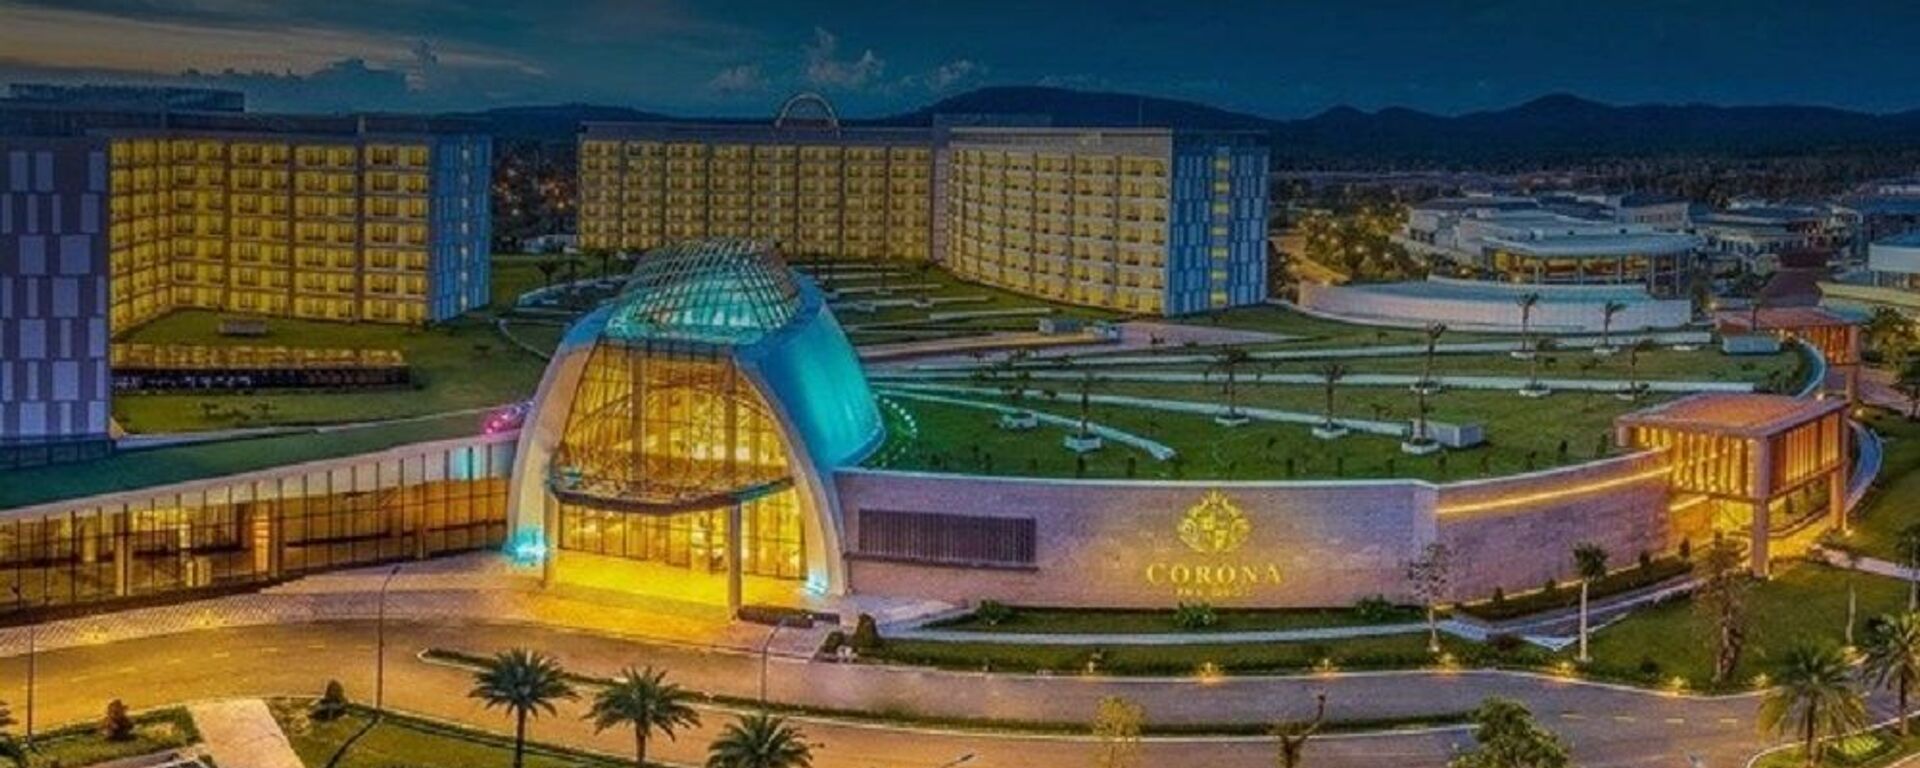 Casino Corona Phú Quốc - Sputnik Việt Nam, 1920, 02.10.2019